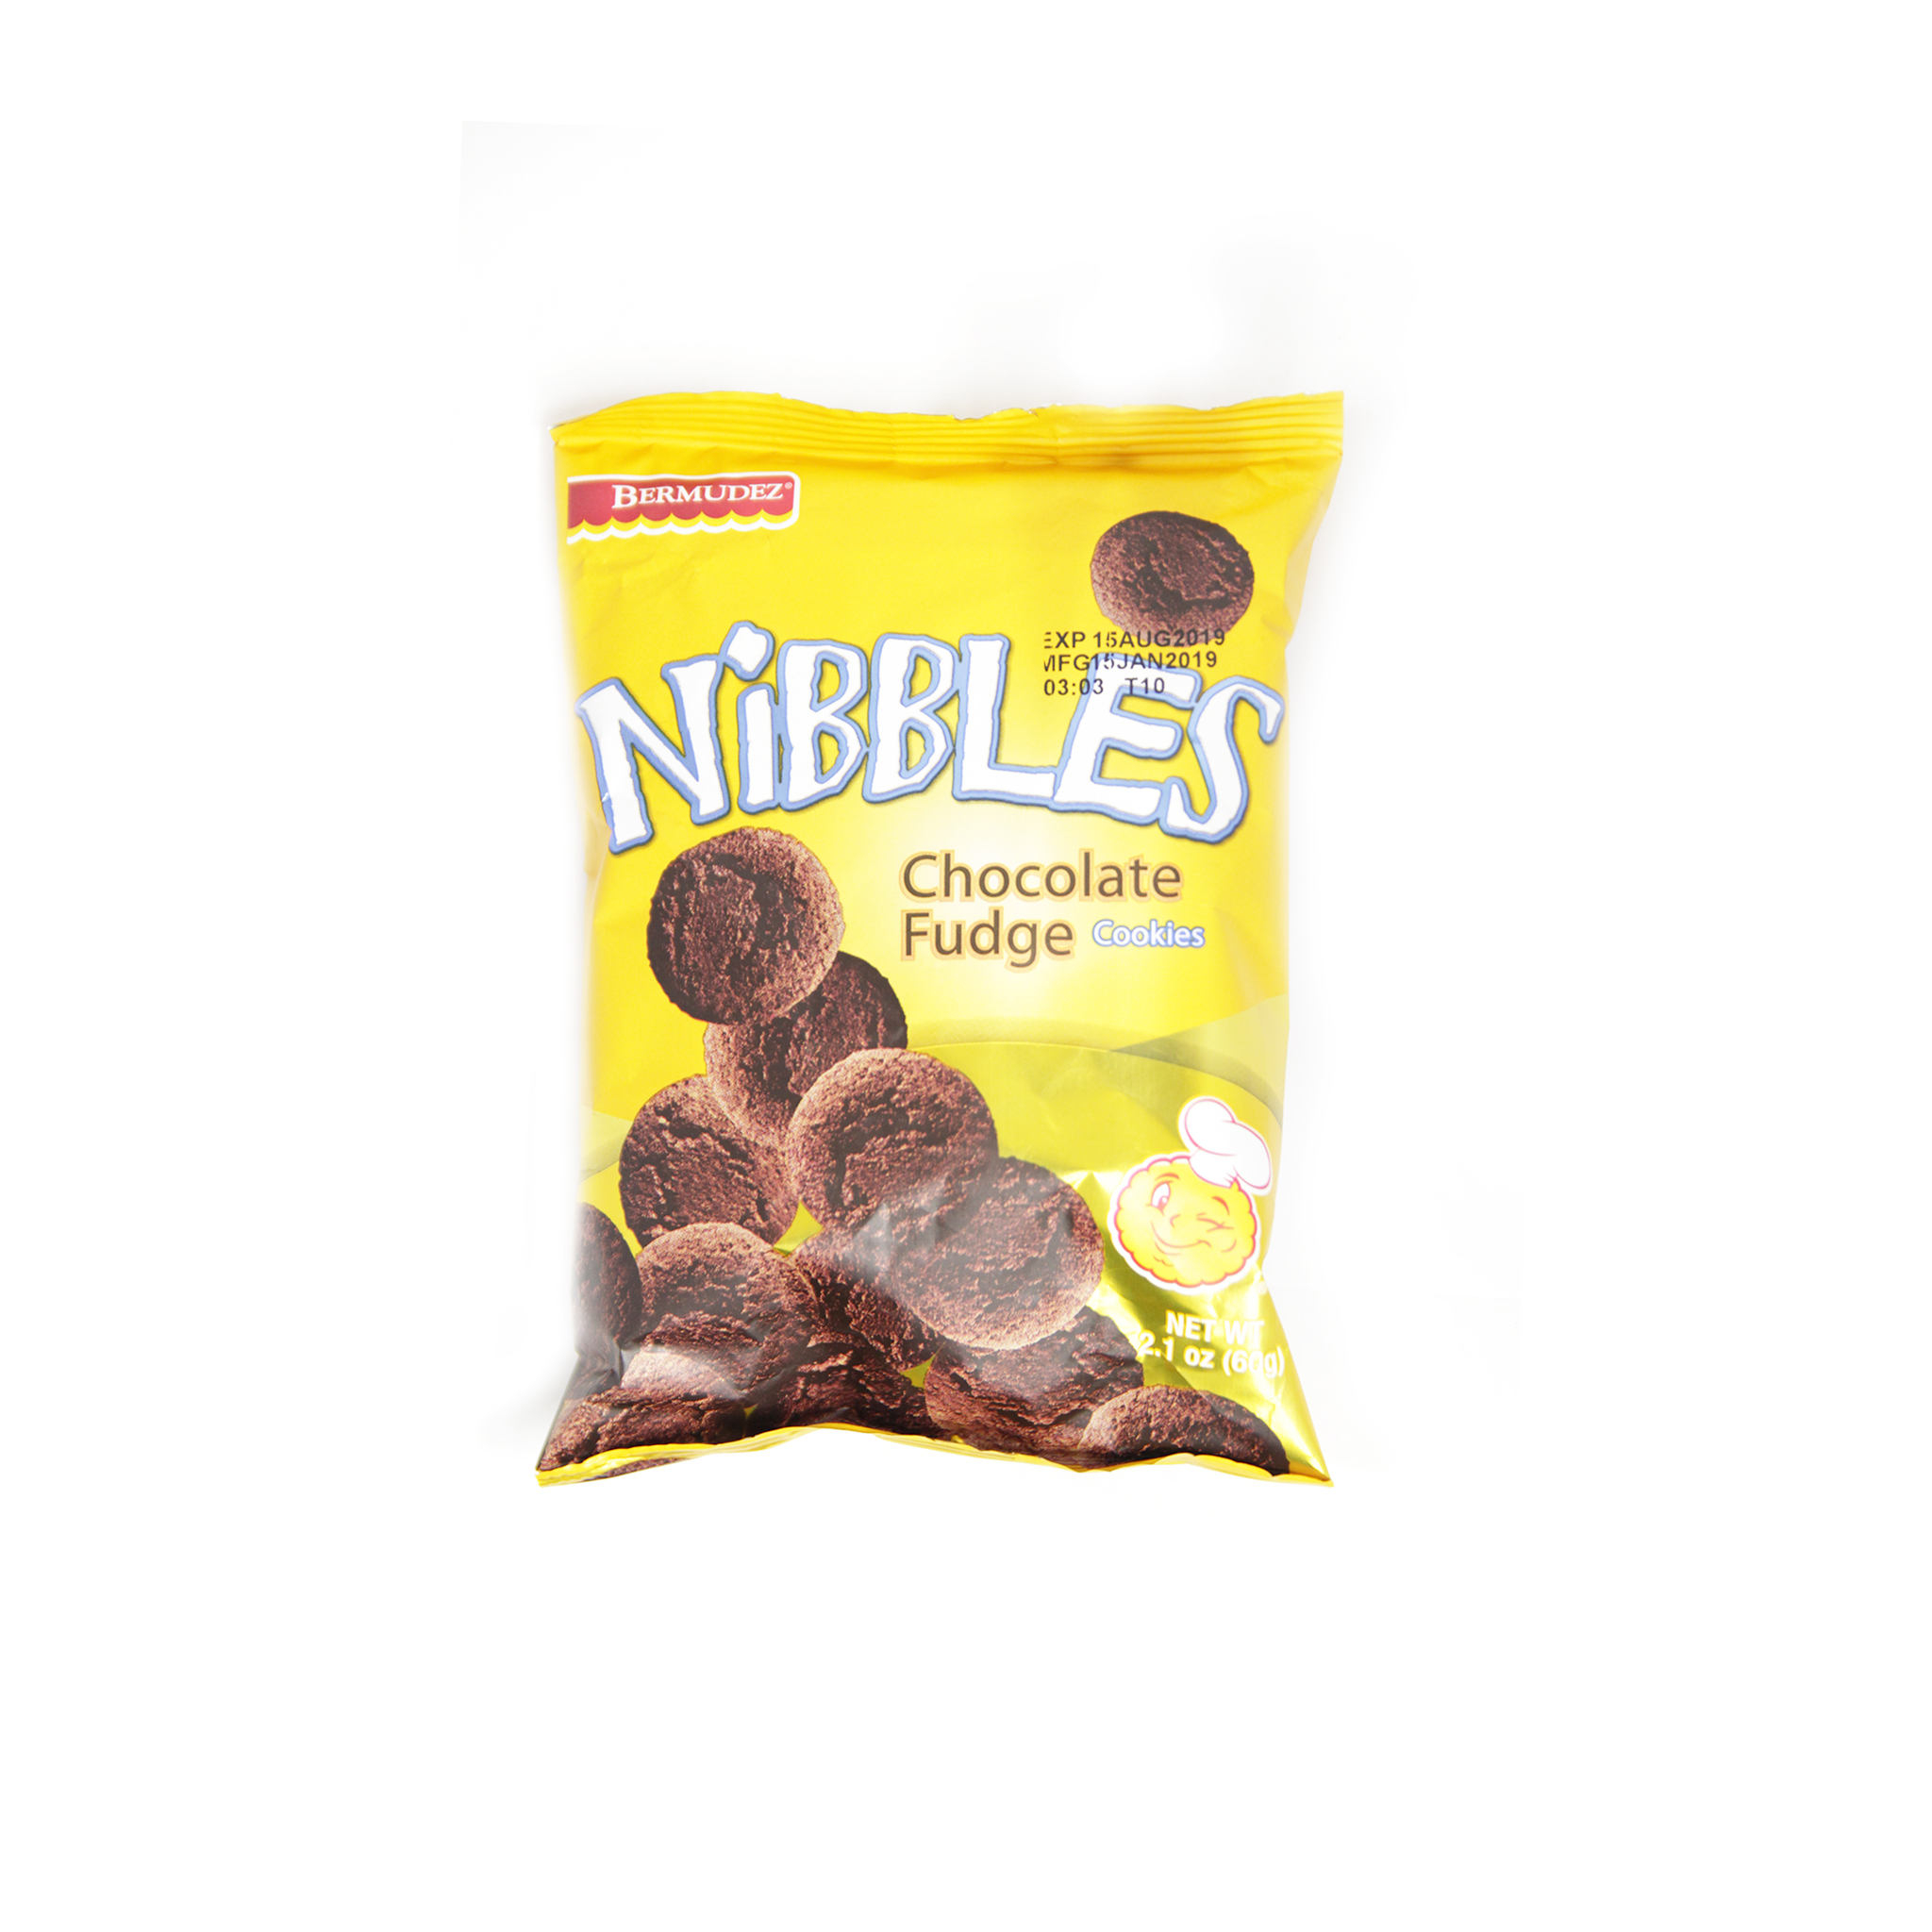 Bermudez Nibbles Chocolate Fudge 60G